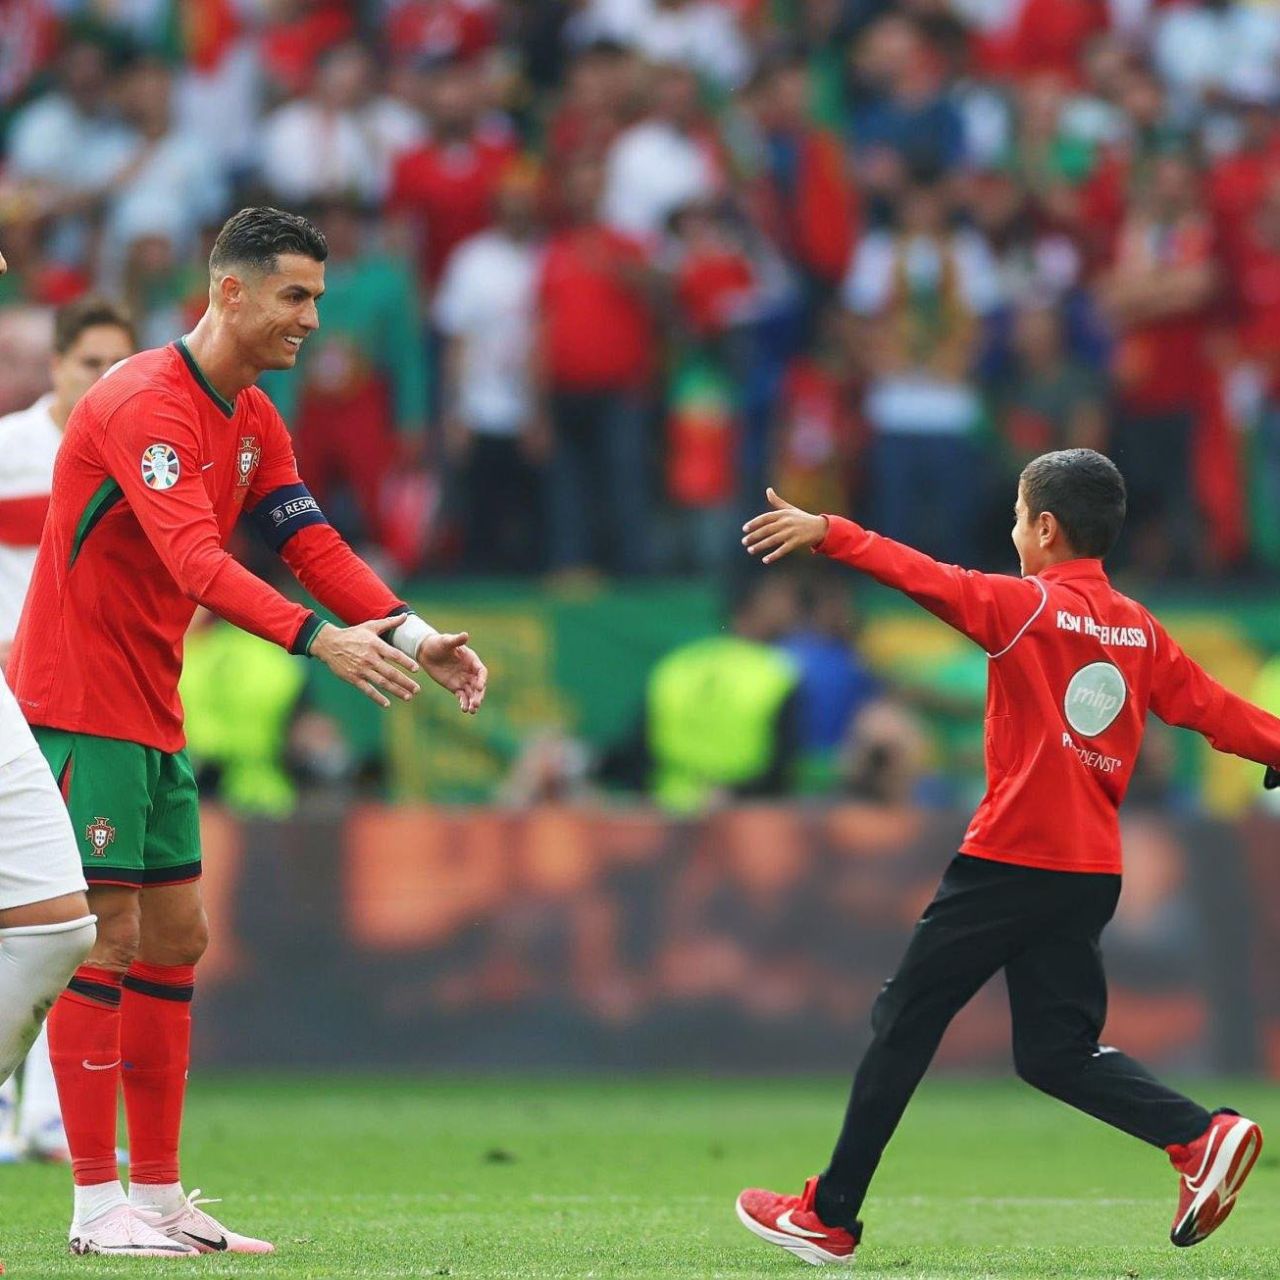 Momen saat si bocah menembus keamanan dan lari menujur Ronaldo 